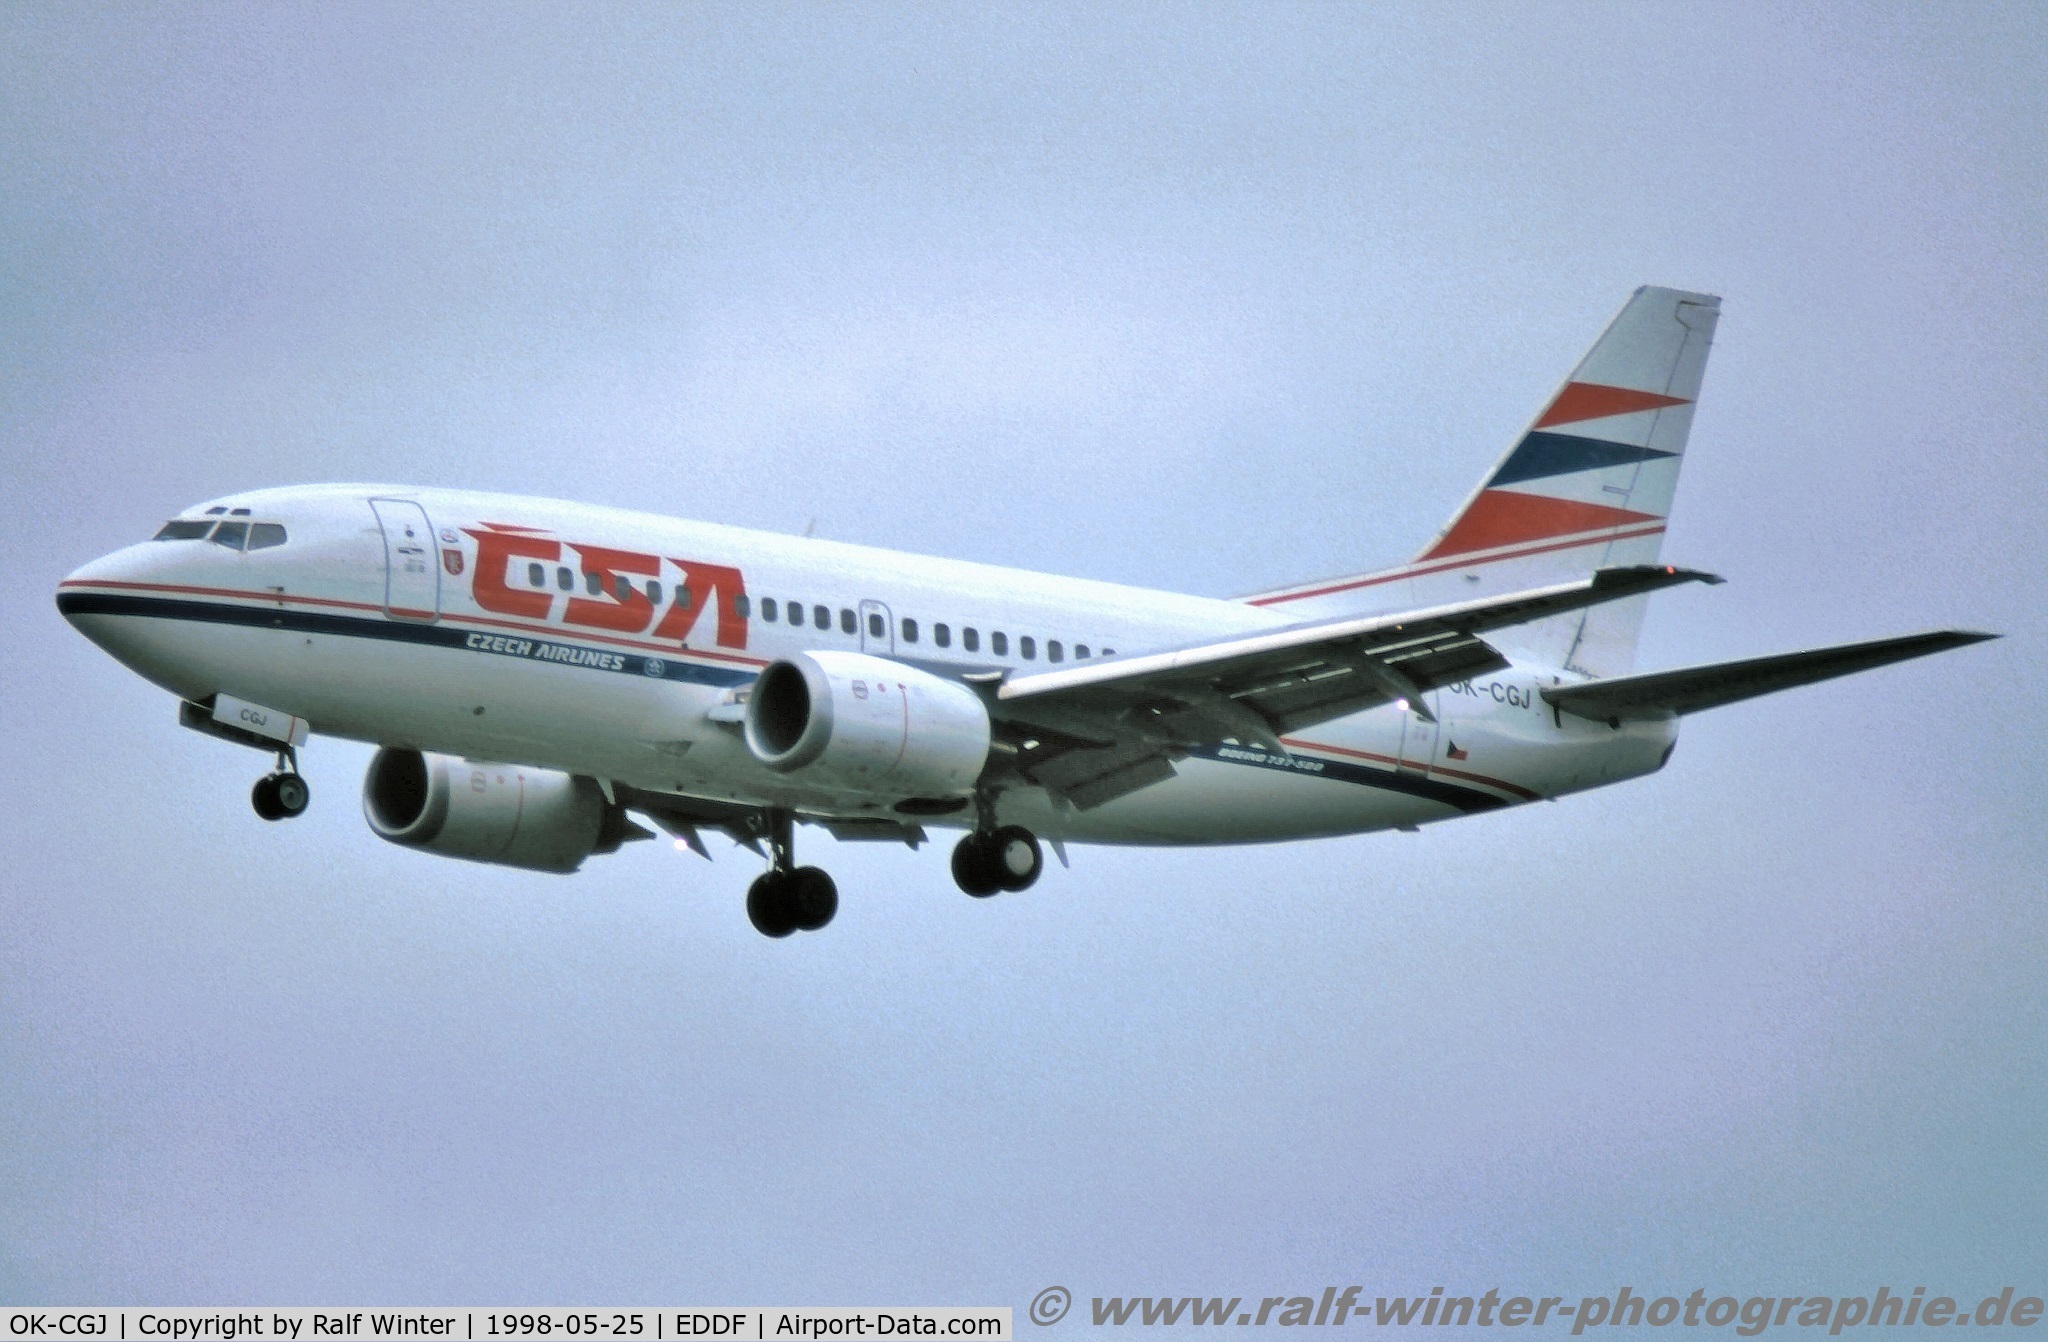 OK-CGJ, 1997 Boeing 737-500 C/N 28470, Boeing 737-55S - OK CSA Czech Airlines 'Hradec Kralove' - 28470 - OK-CGJ - 25.05.1998 - FRA